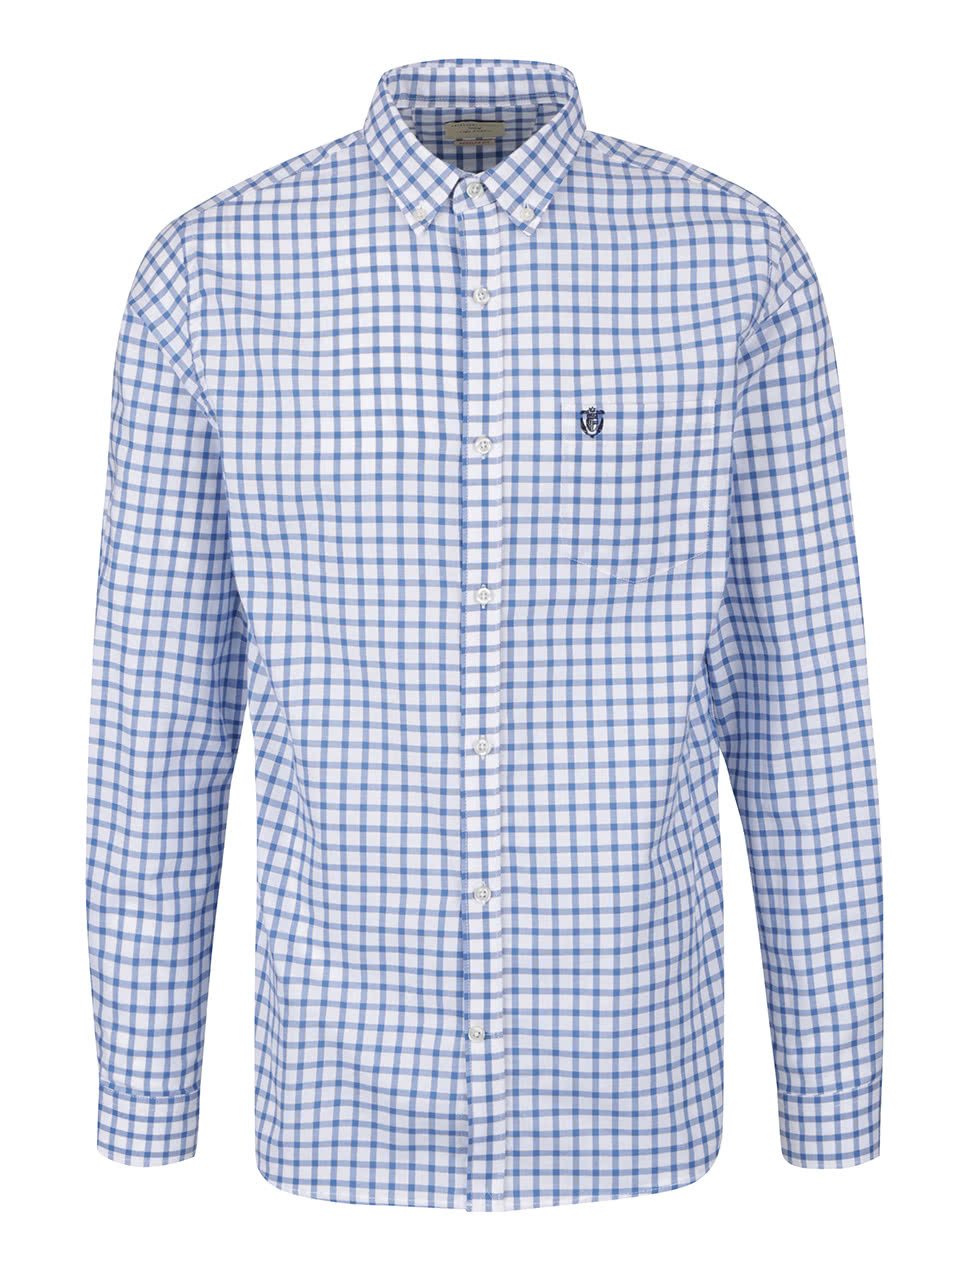 Modro-bílá kostkovaná slim fit košile Selected Homme Coll